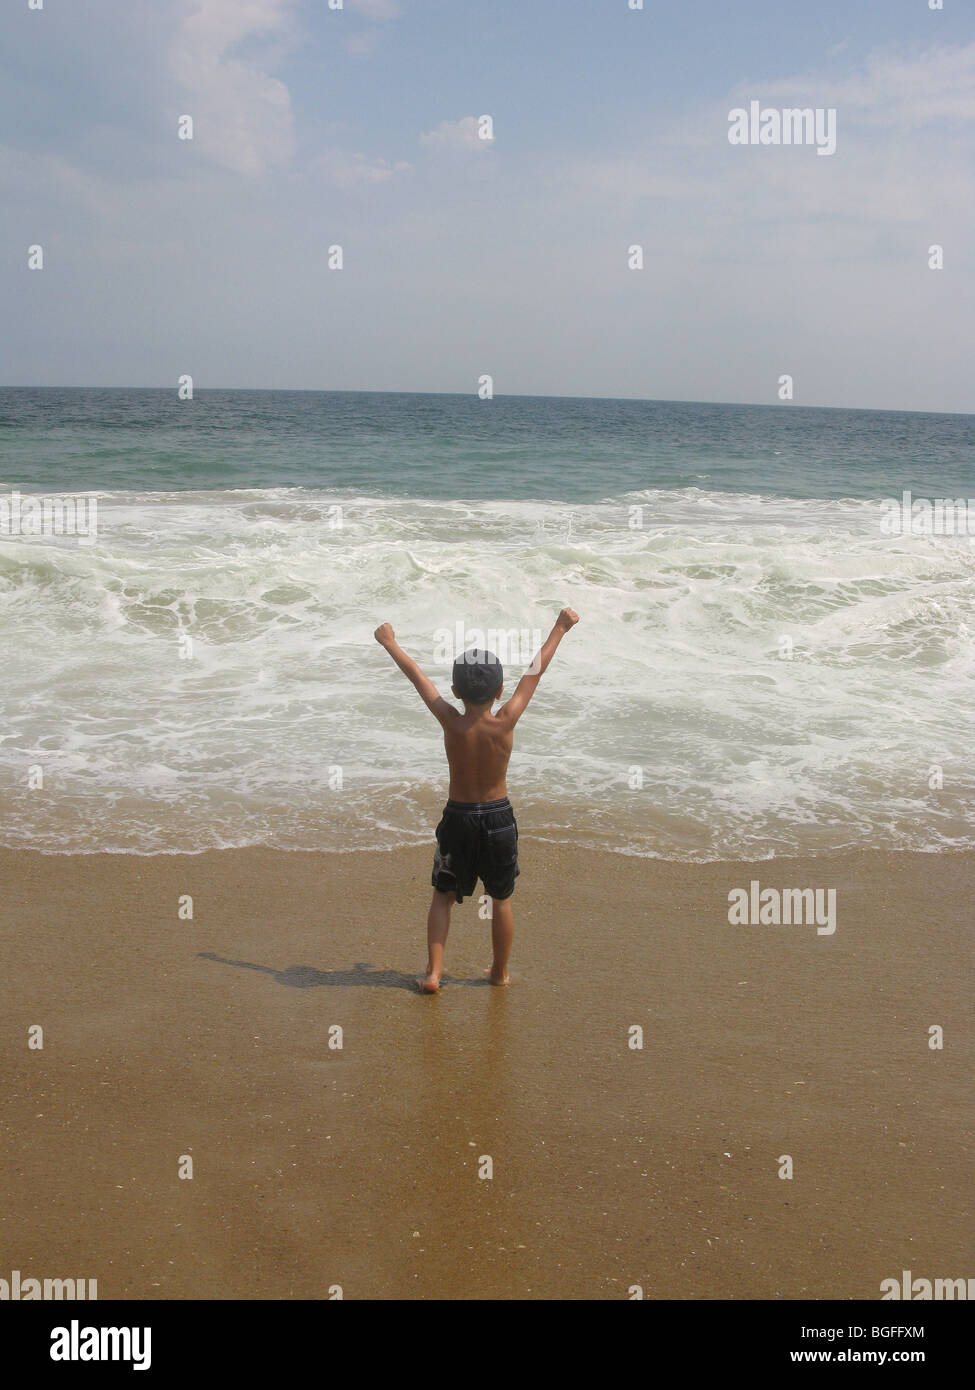 Un jeune garçon au bord de l'eau plage vagues Banque D'Images